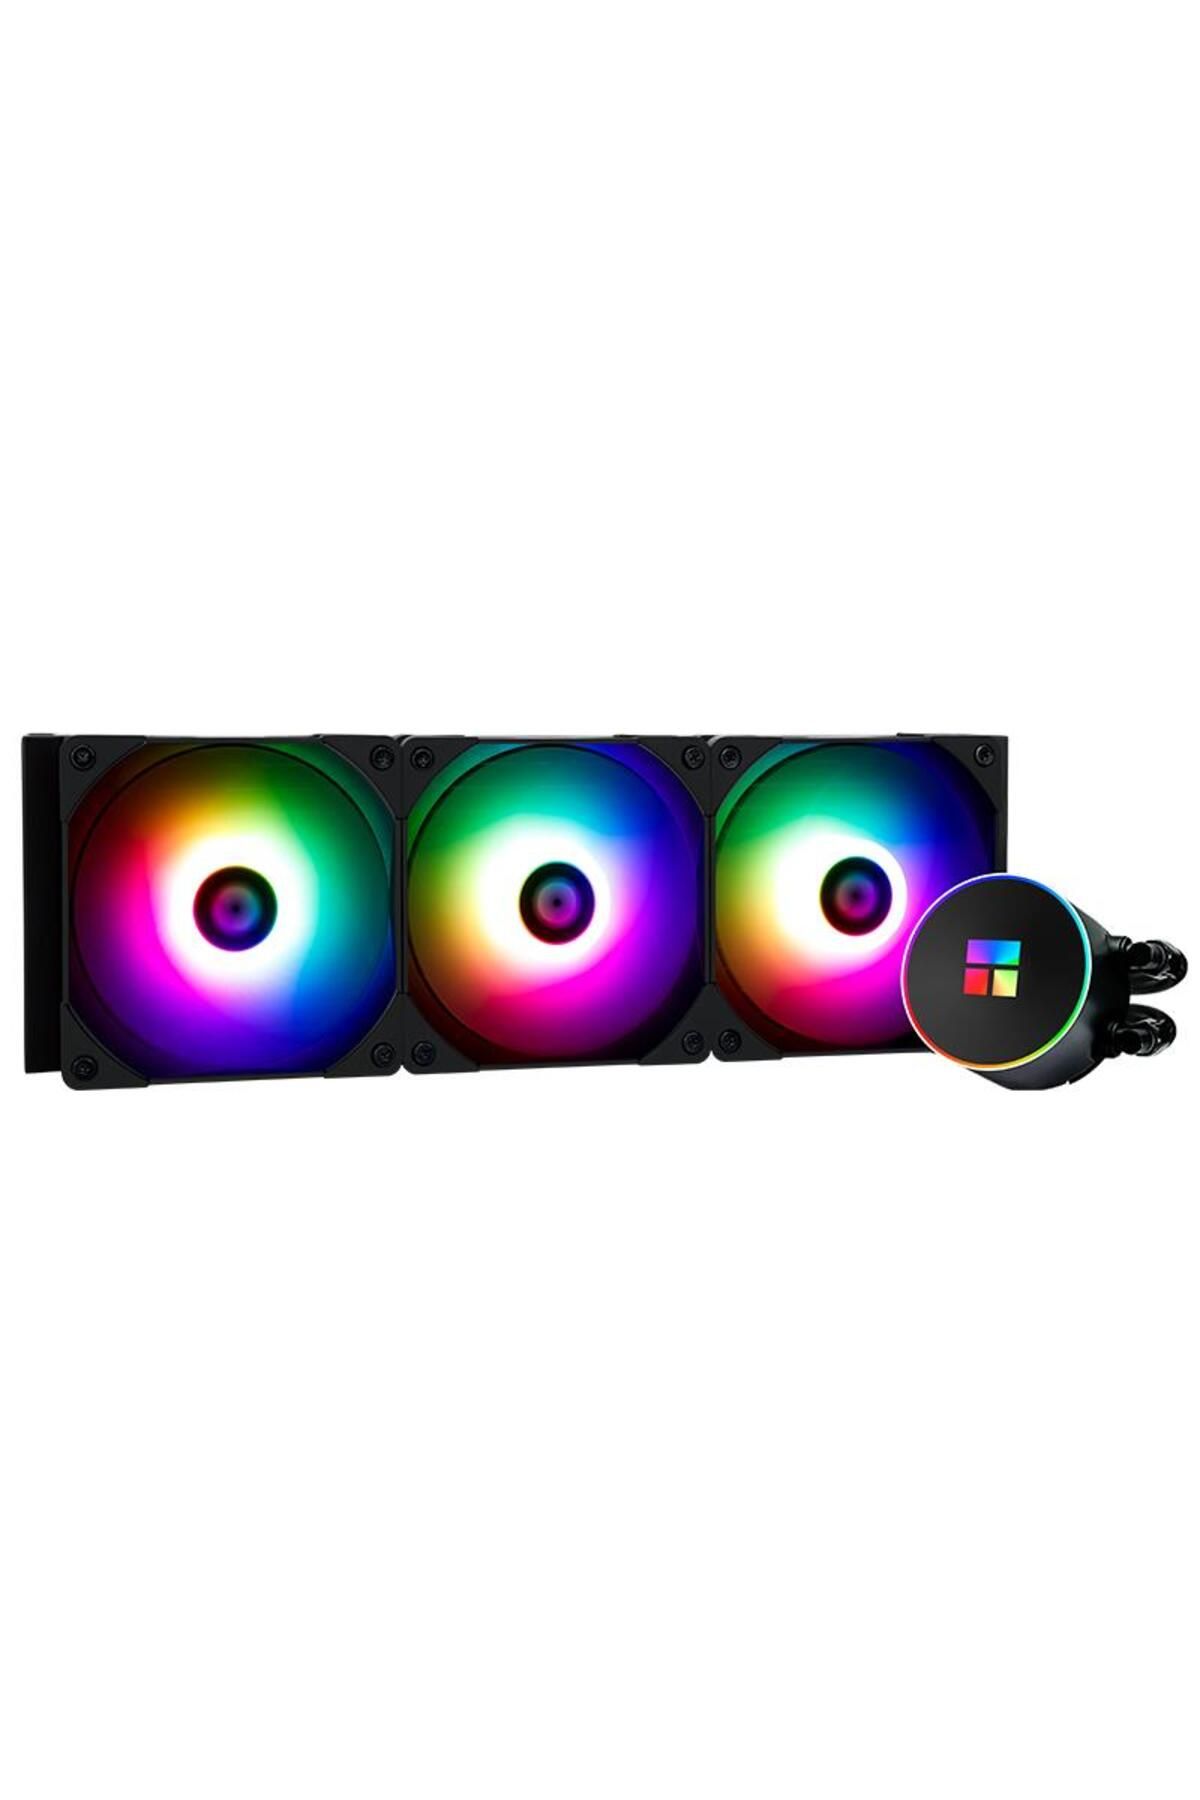 ThermalRight Frozen Horizon 360 Siyah ARGB Sıvı İşlemci Soğutucu